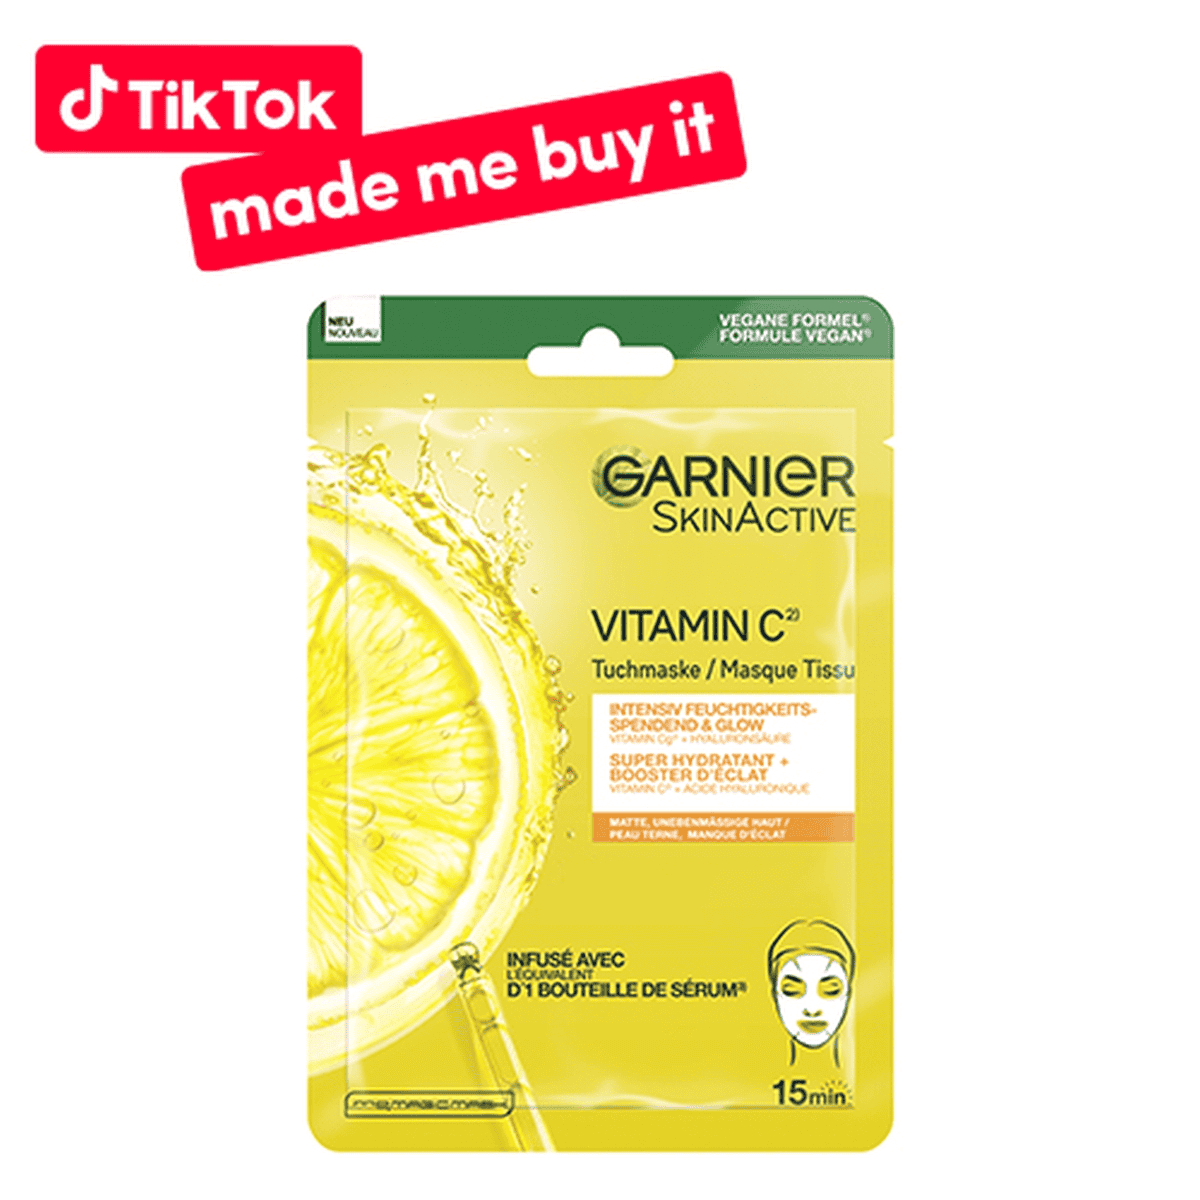 Garnier - Vitamin C Intensiv feuchtigkeitsspendende & Glow Tuchmaske •